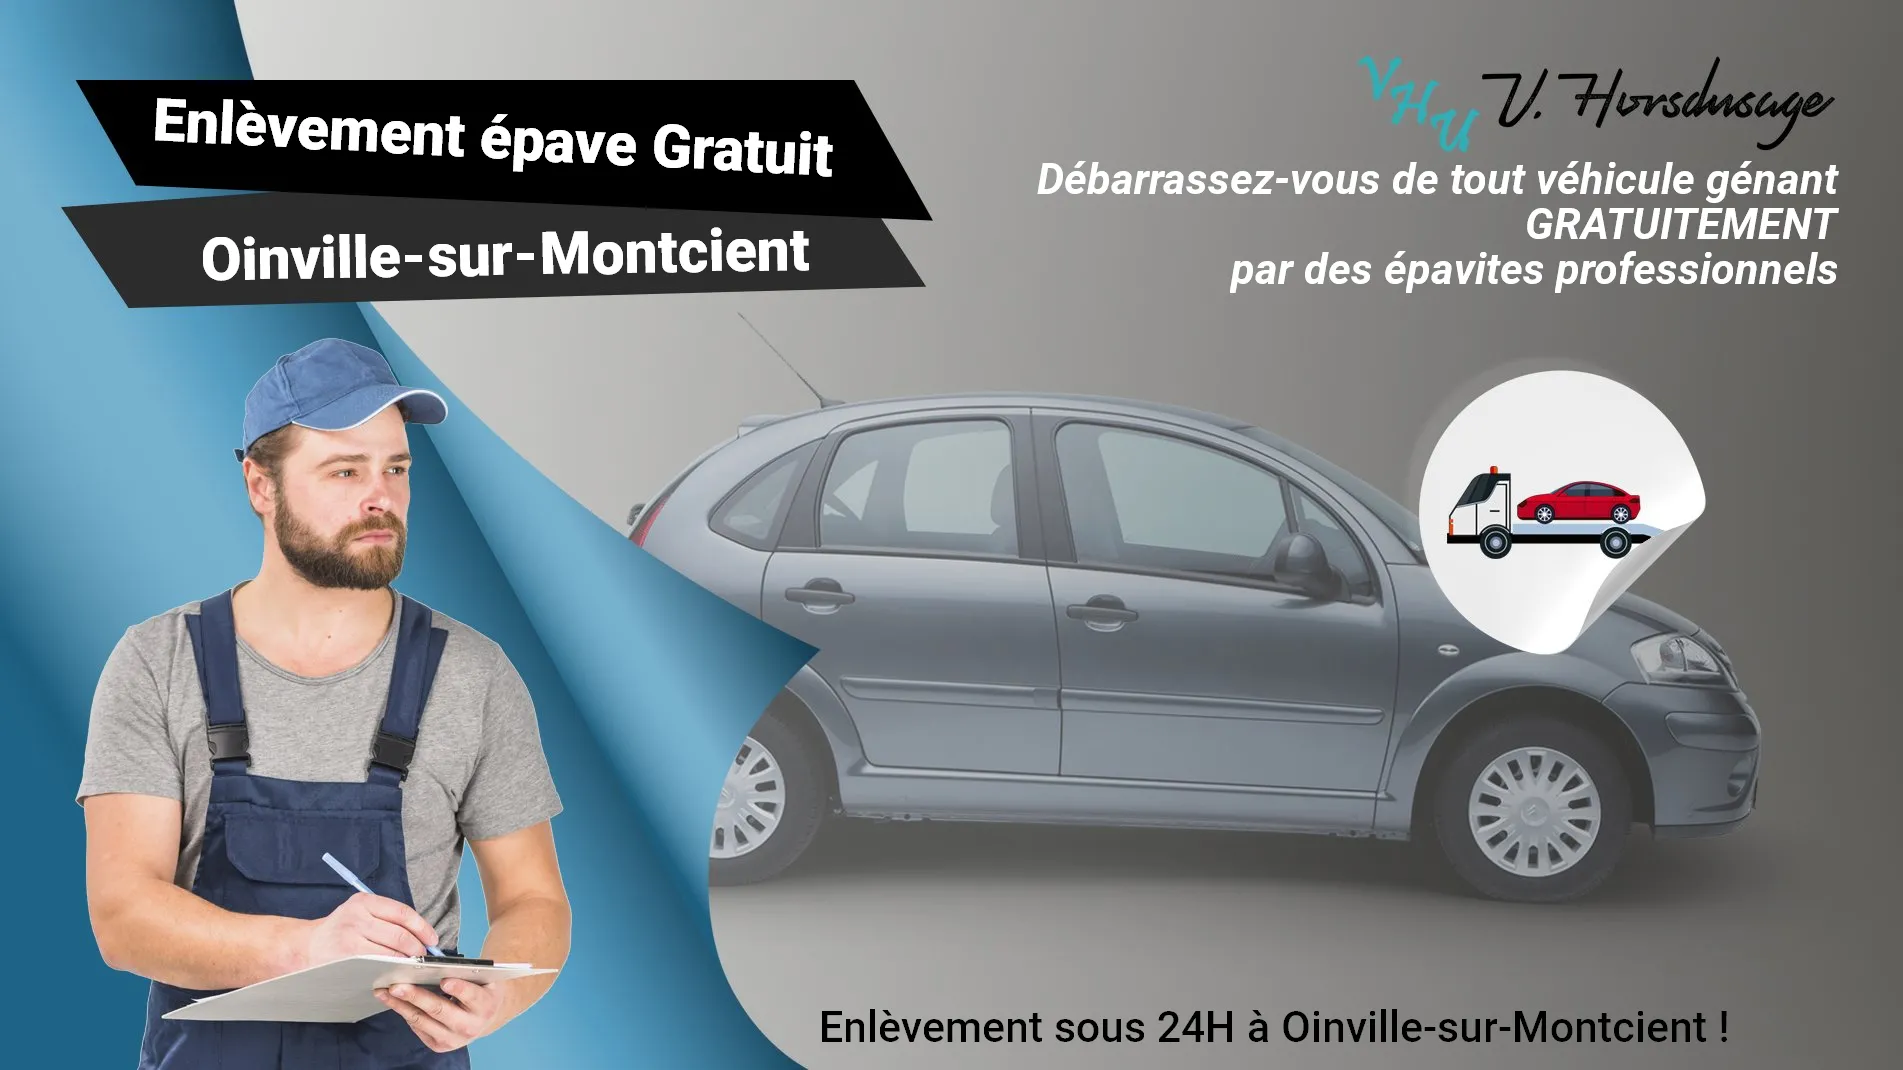 Pour un enlèvement gratuit à Oinville-sur-Montcient, contactez nos épavistes agréé VHU